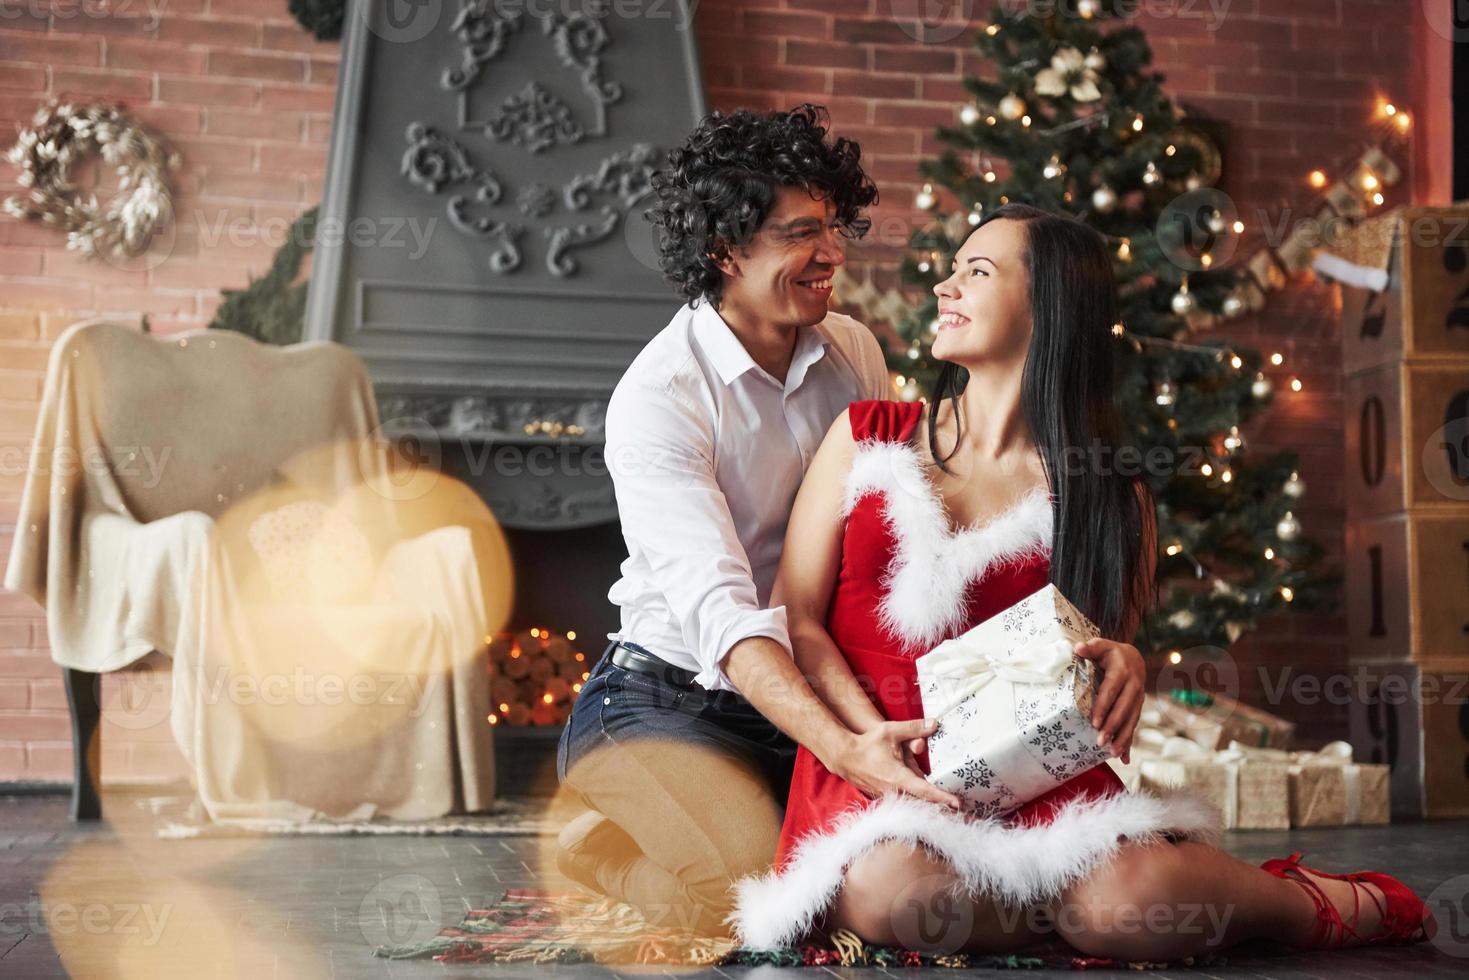 einander mit Liebe anschauen. Schönes Paar feiert Neujahr im dekorierten Raum mit Weihnachtsbaum und Kamin dahinter foto